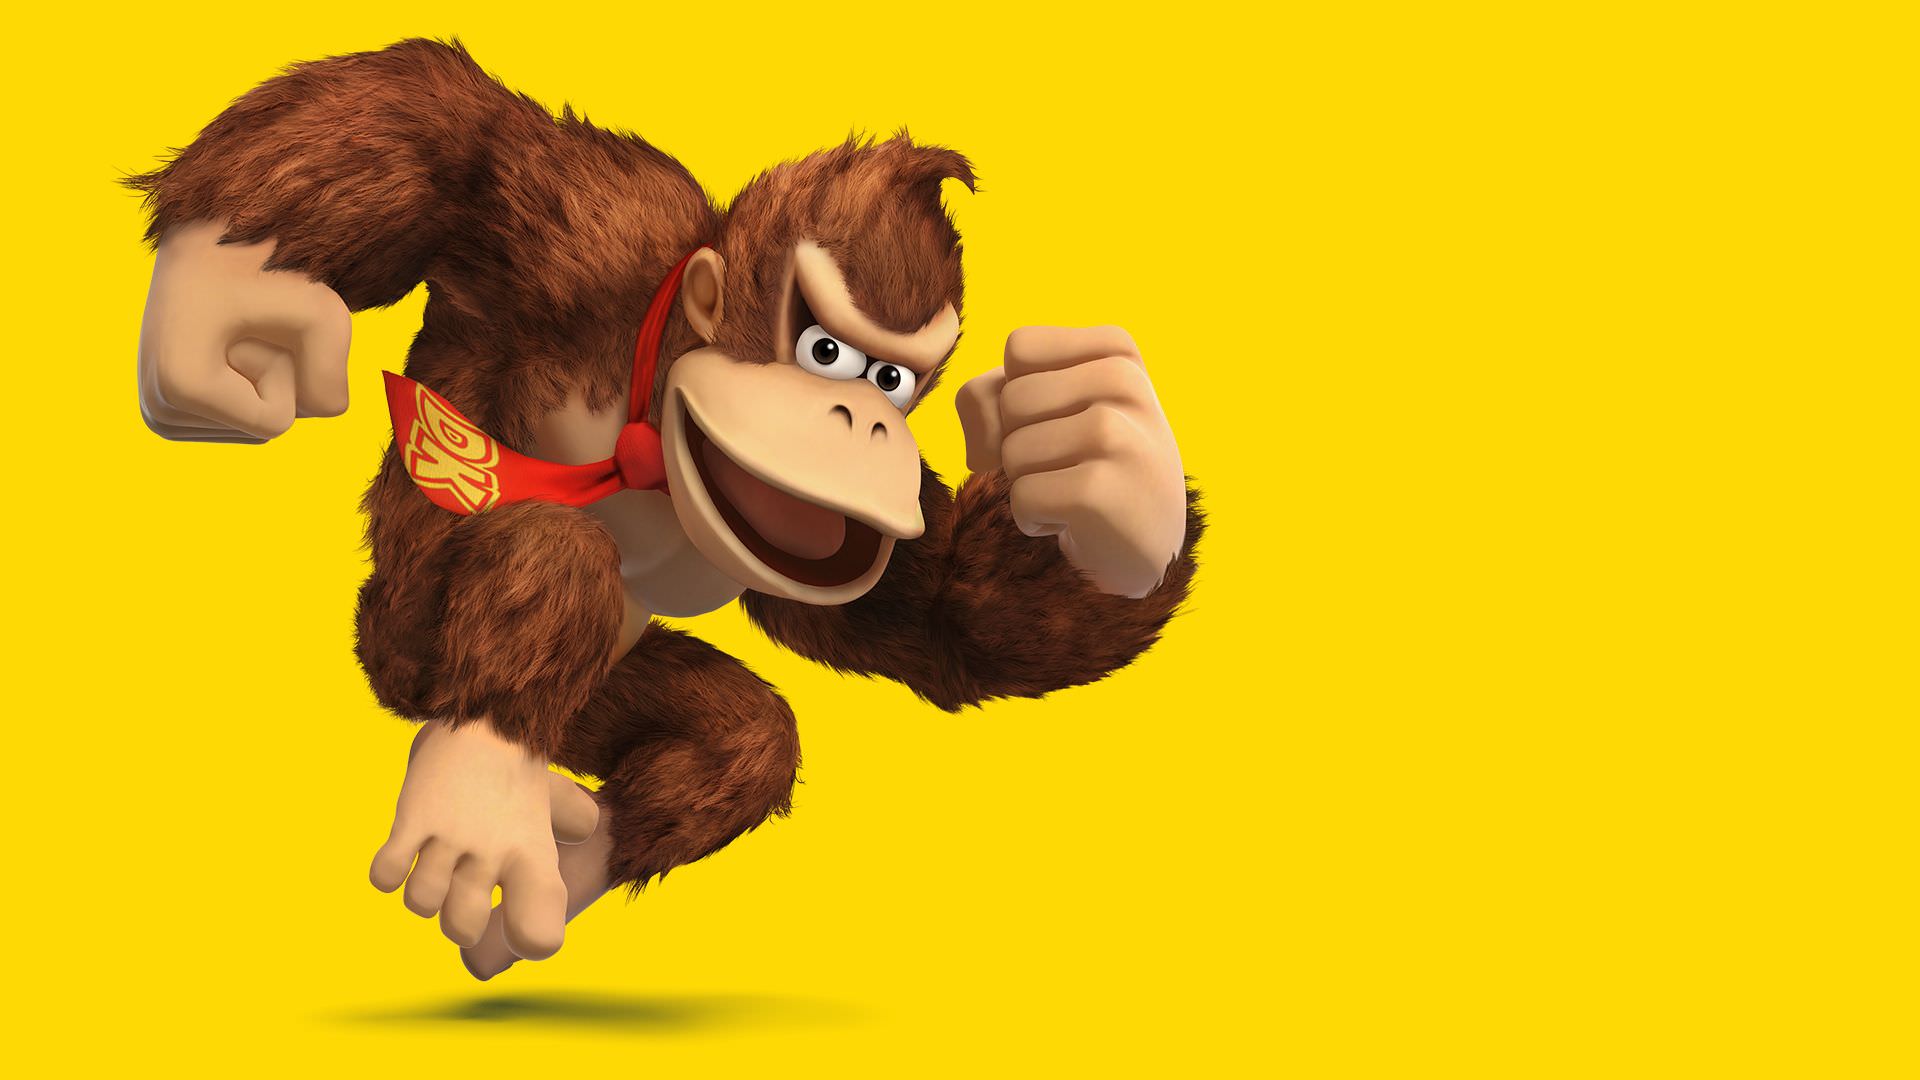 فروش بازی های Donkey Kong از مرز ۶۵ میلیون نسخه عبور کرد